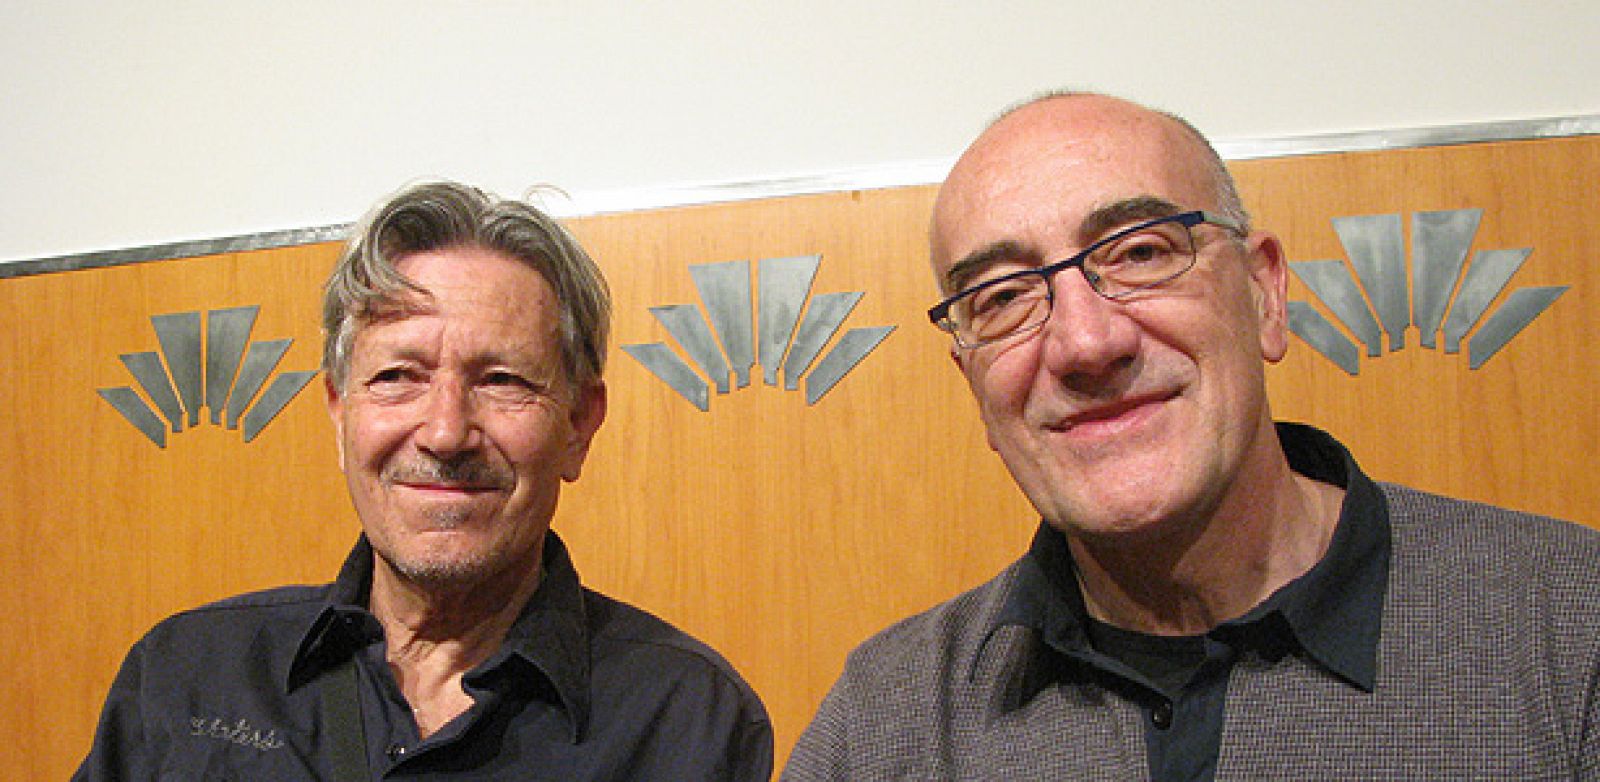 Kim (Izqda) y Antonio altarriba, los reyes del Salón del Cómic de Barcelona